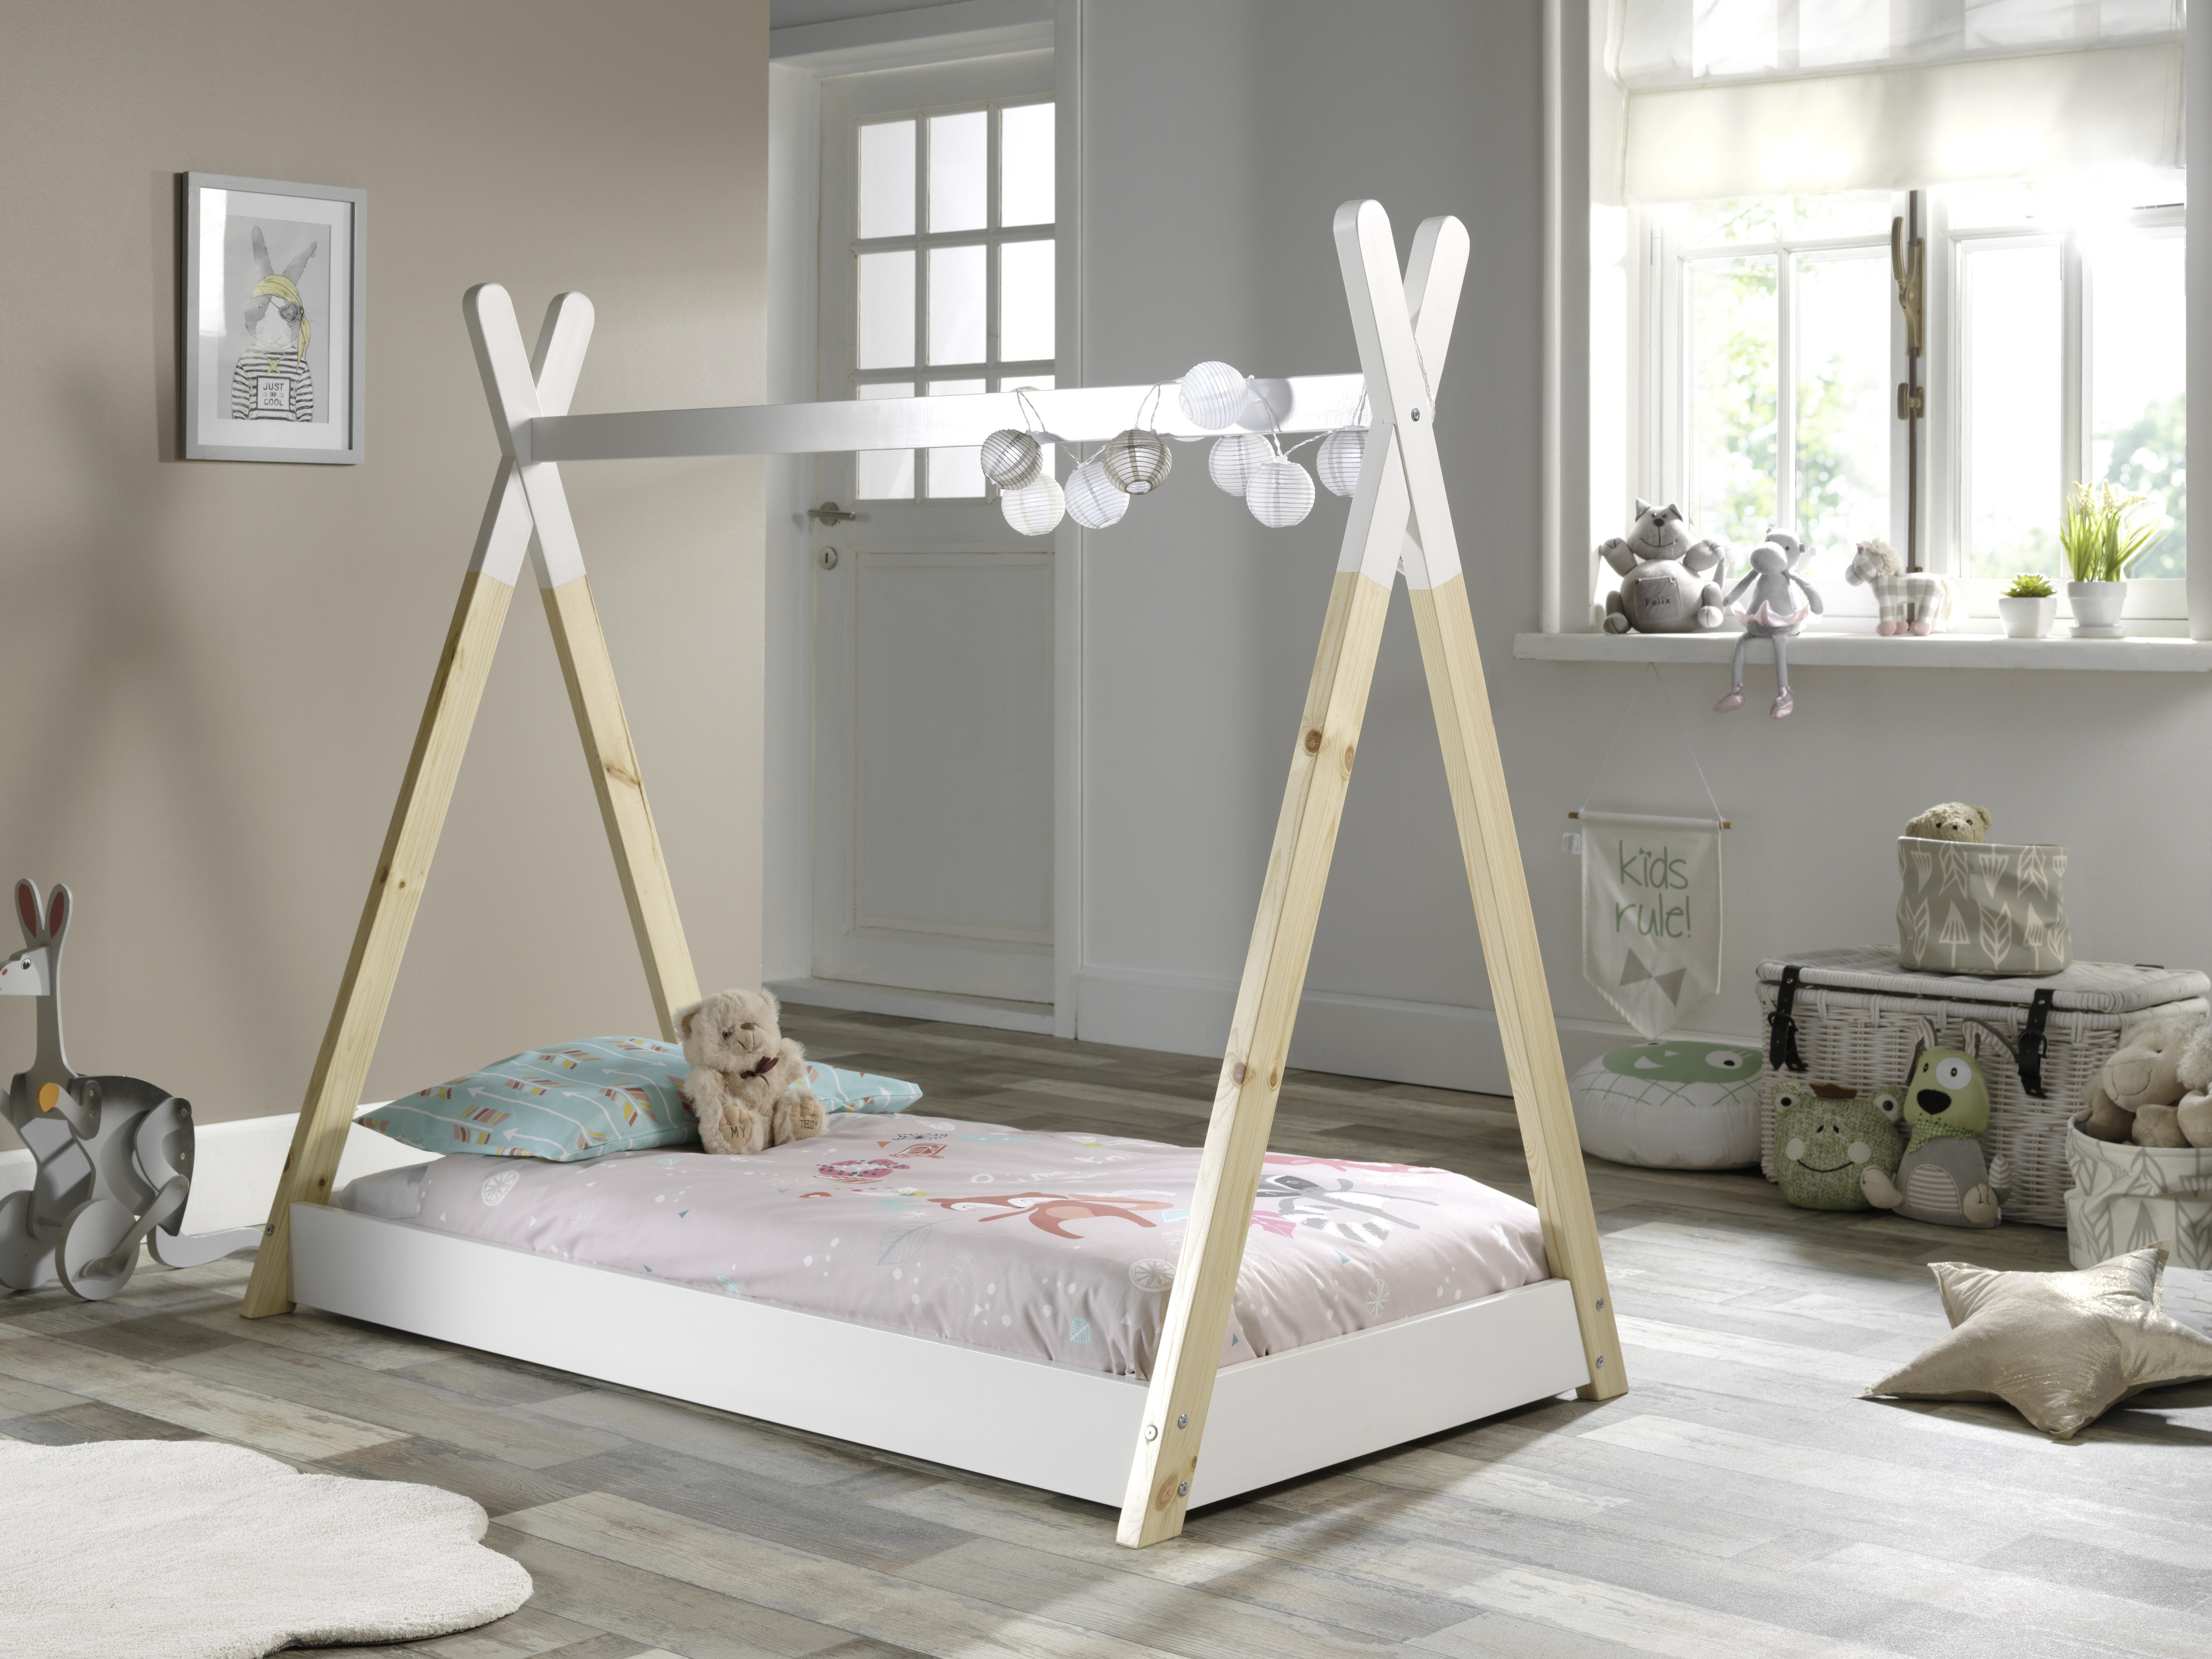 Montessori-Bett 70/140 cm  in Weiß, Kieferfarben  - Weiß/Kieferfarben, MODERN, Holz/Holzwerkstoff (70/140cm) - MID.YOU